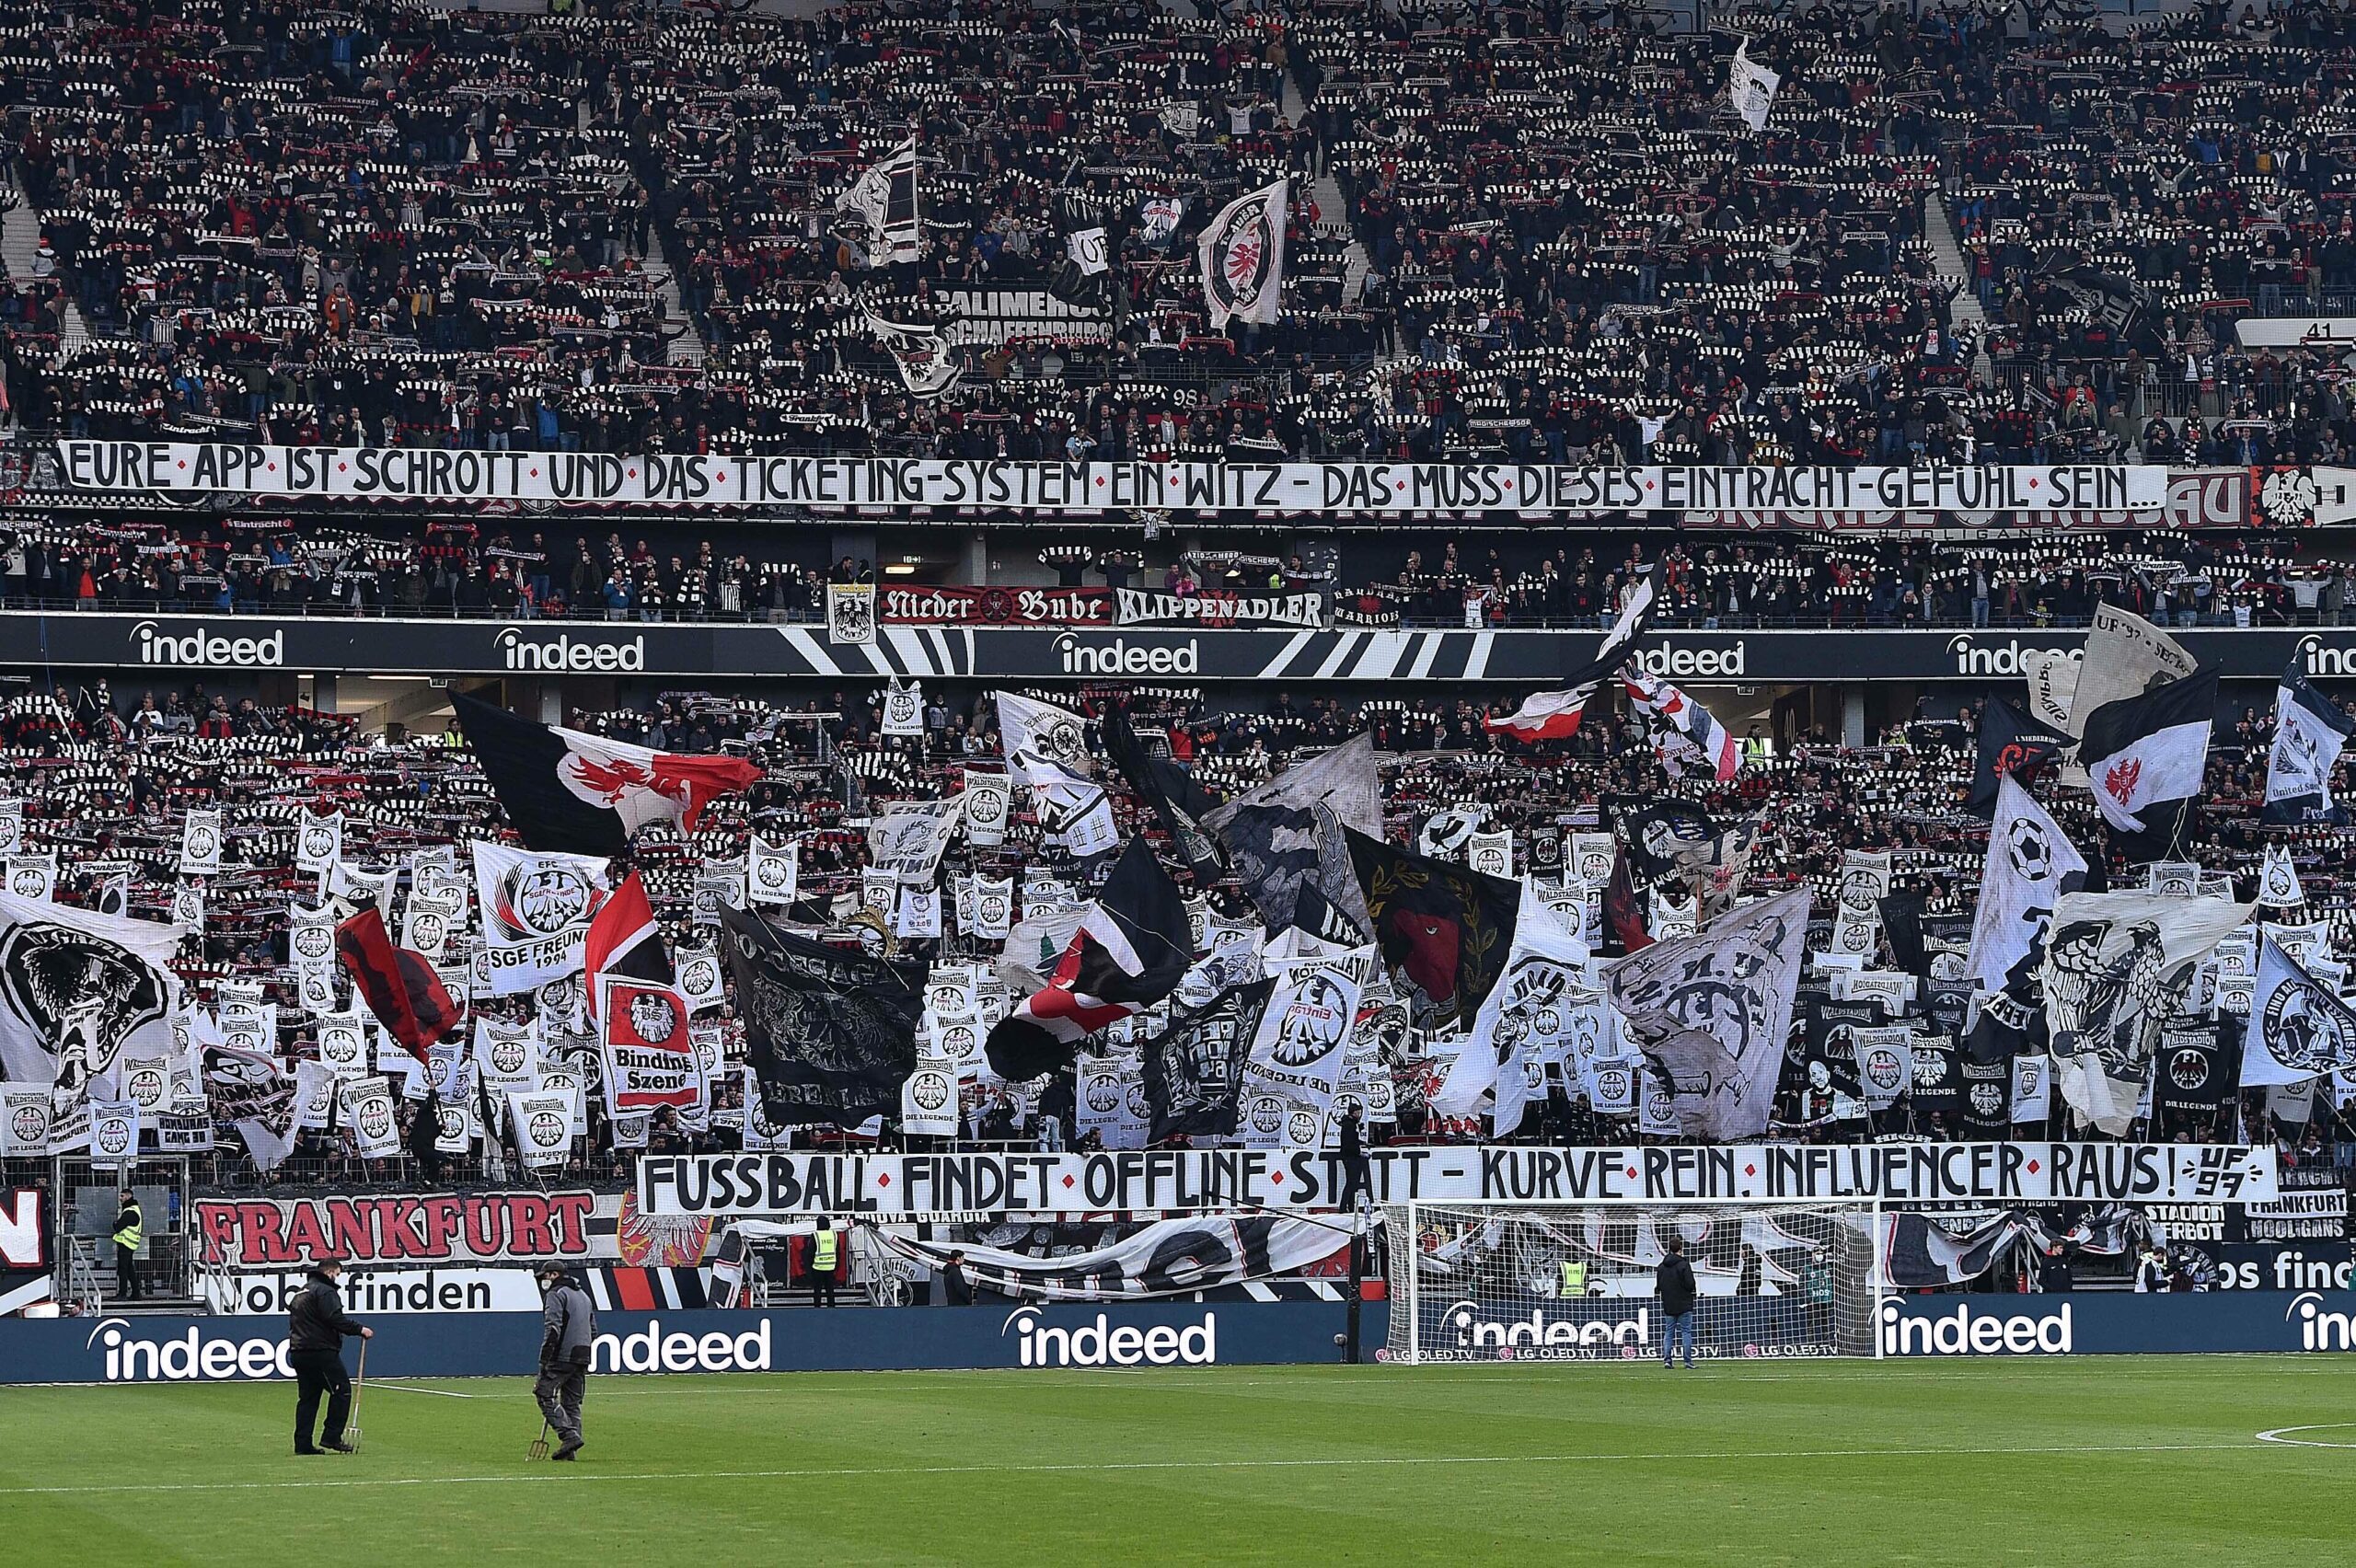 Bundesliga-Fans können sich über preisstabile Tickets in der kommenden Saison freuen.